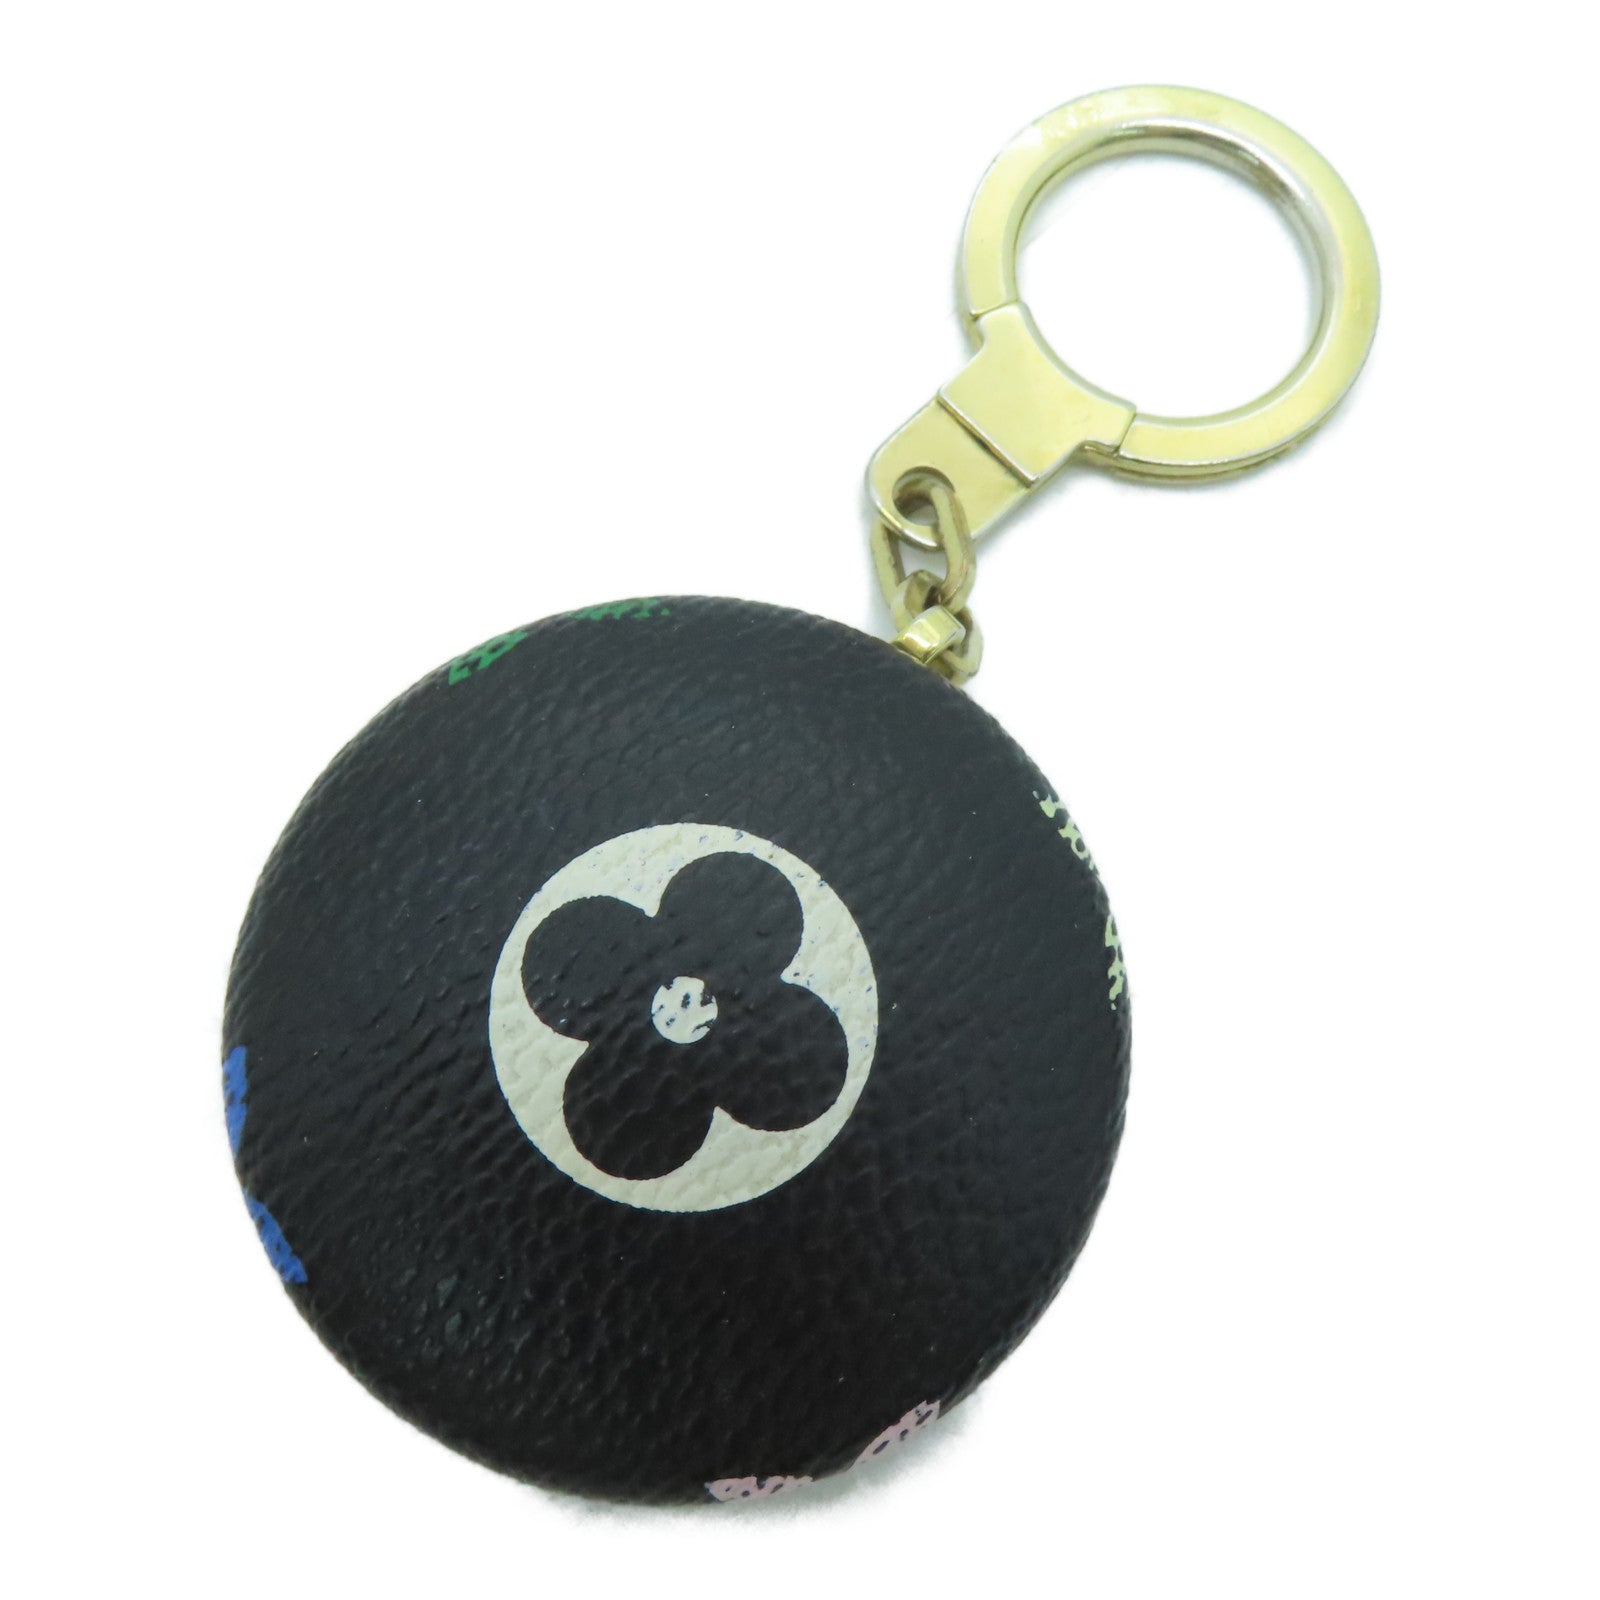 LOUIS VUITTON Monogram Multicolore Key Holder Keychain / Ornament Black /  Color